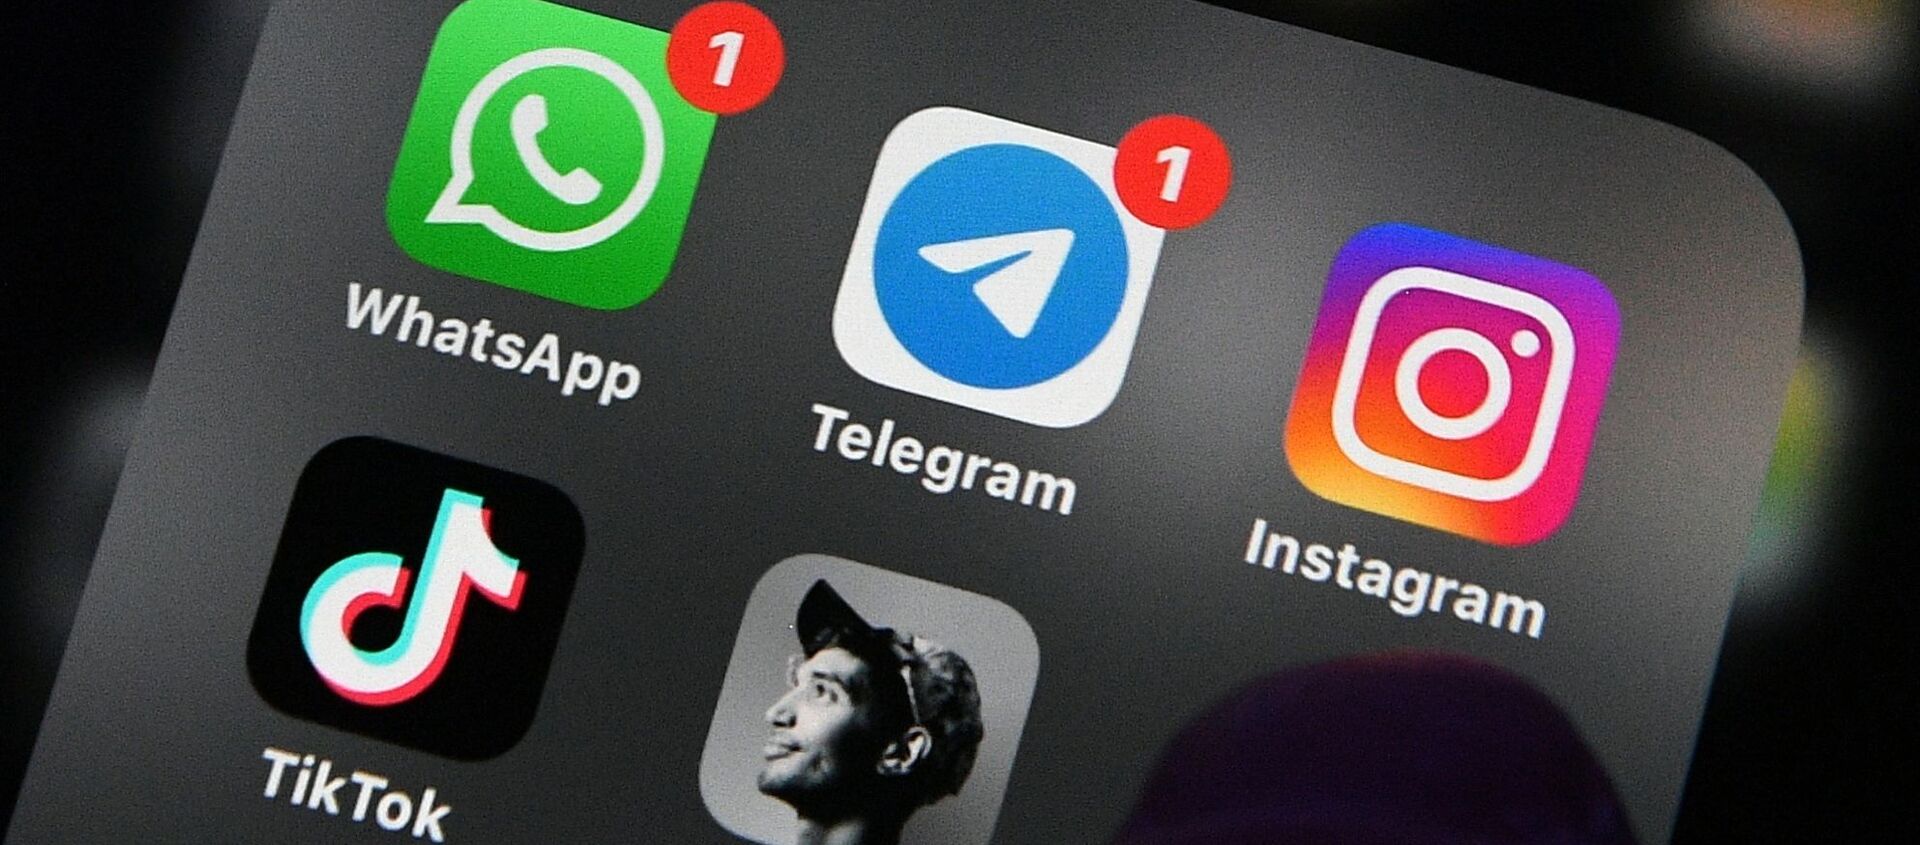 Các ứng dụng WhatsApp, Telegram, Instagram, TikTok và Clubhouse trên màn hình - Sputnik Việt Nam, 1920, 02.03.2021